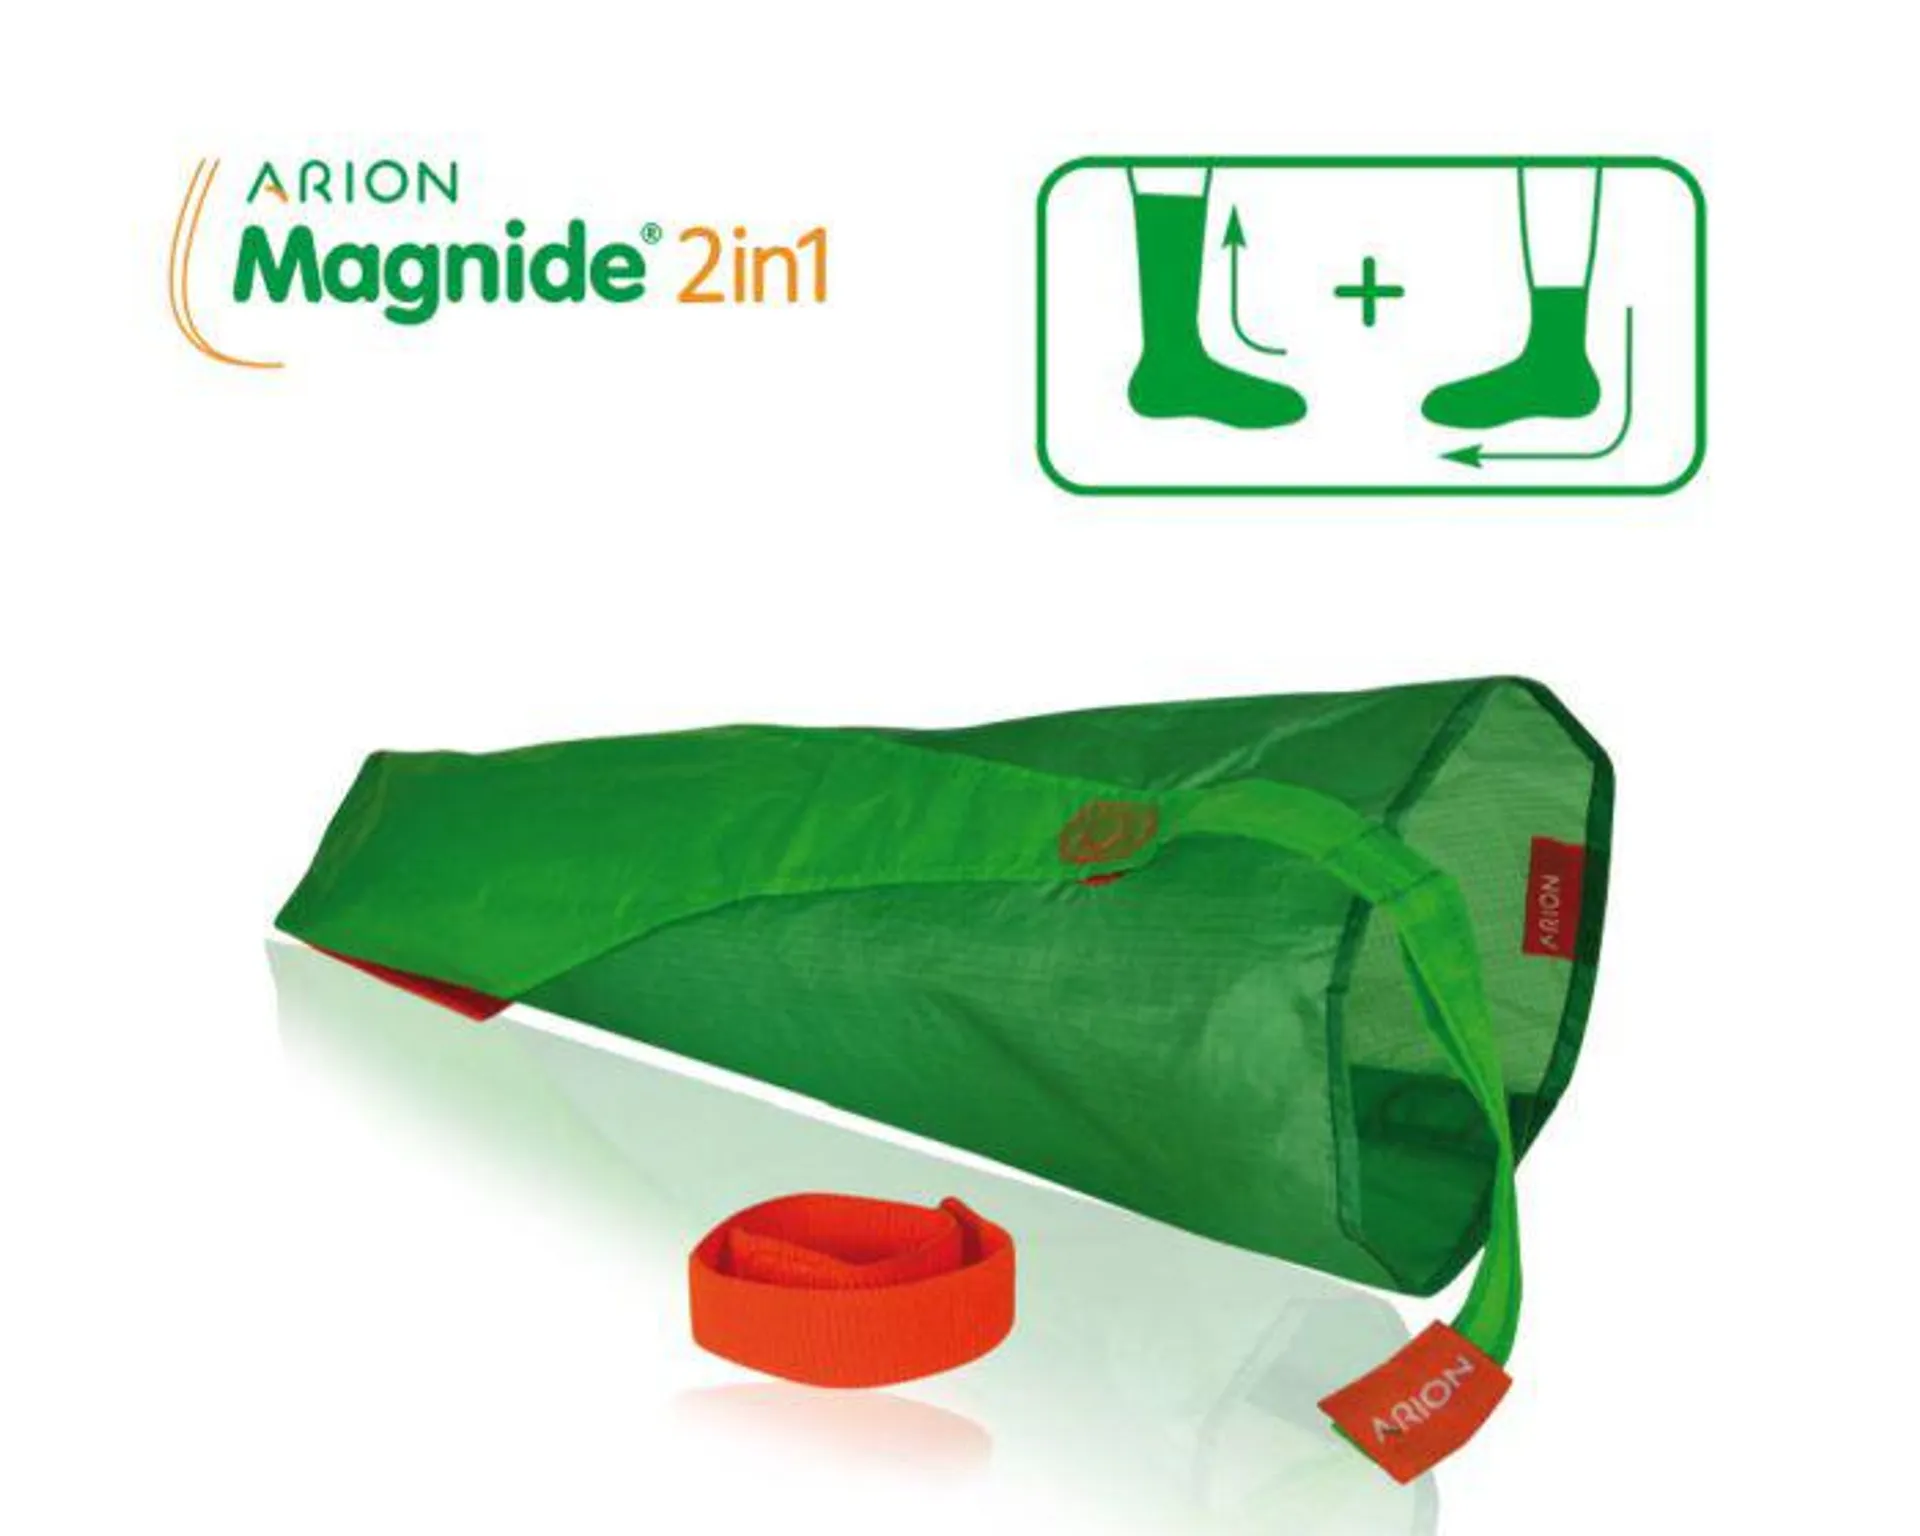 ARION Magnide 2in1